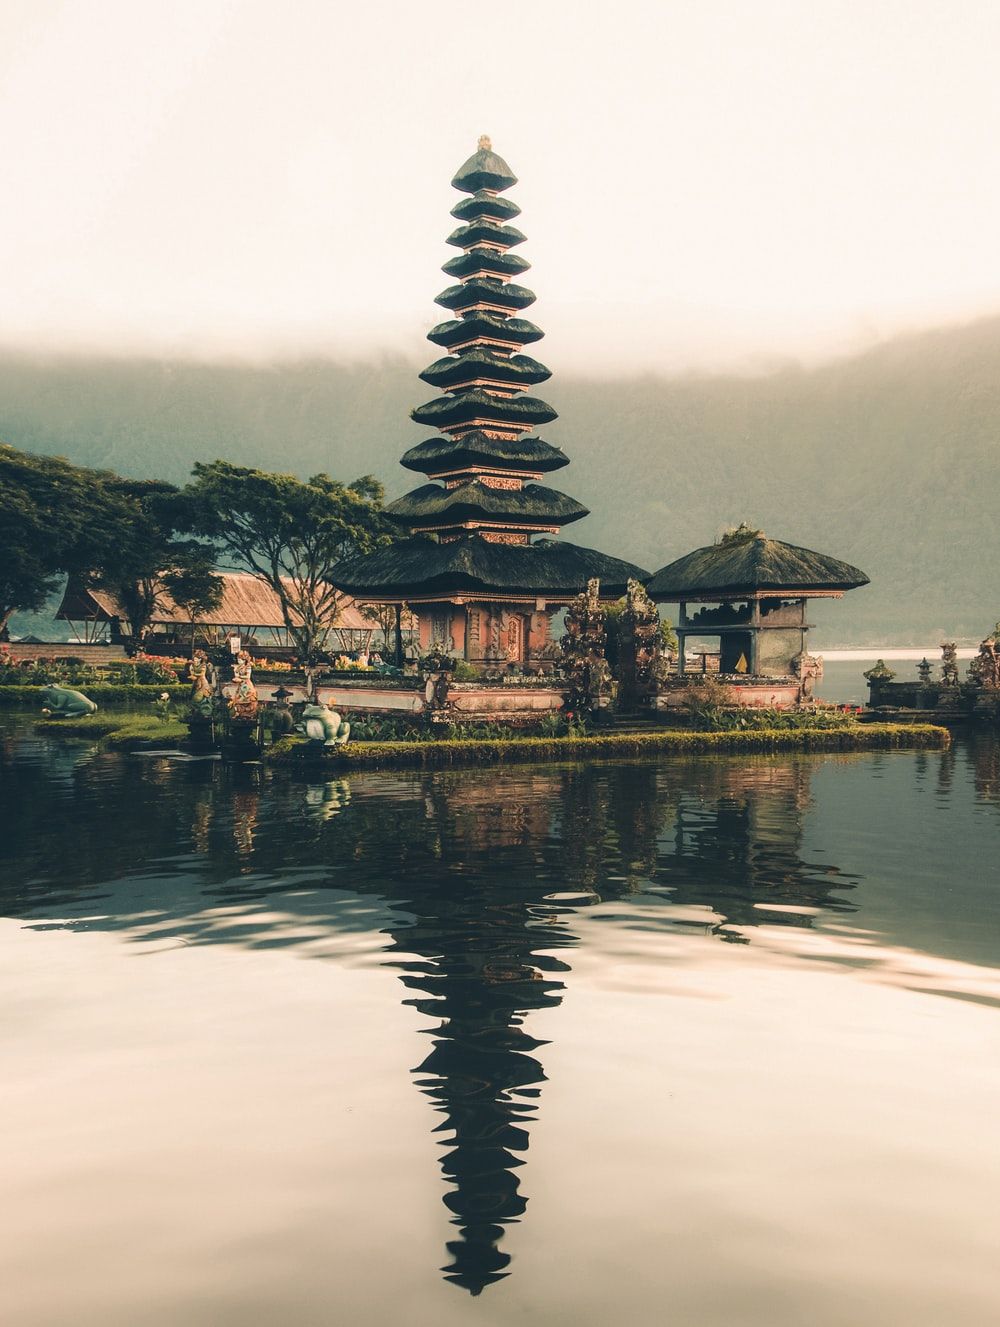 عکس جالب یک معبد در جزیره بالی اندونزی با کیفیت 4k